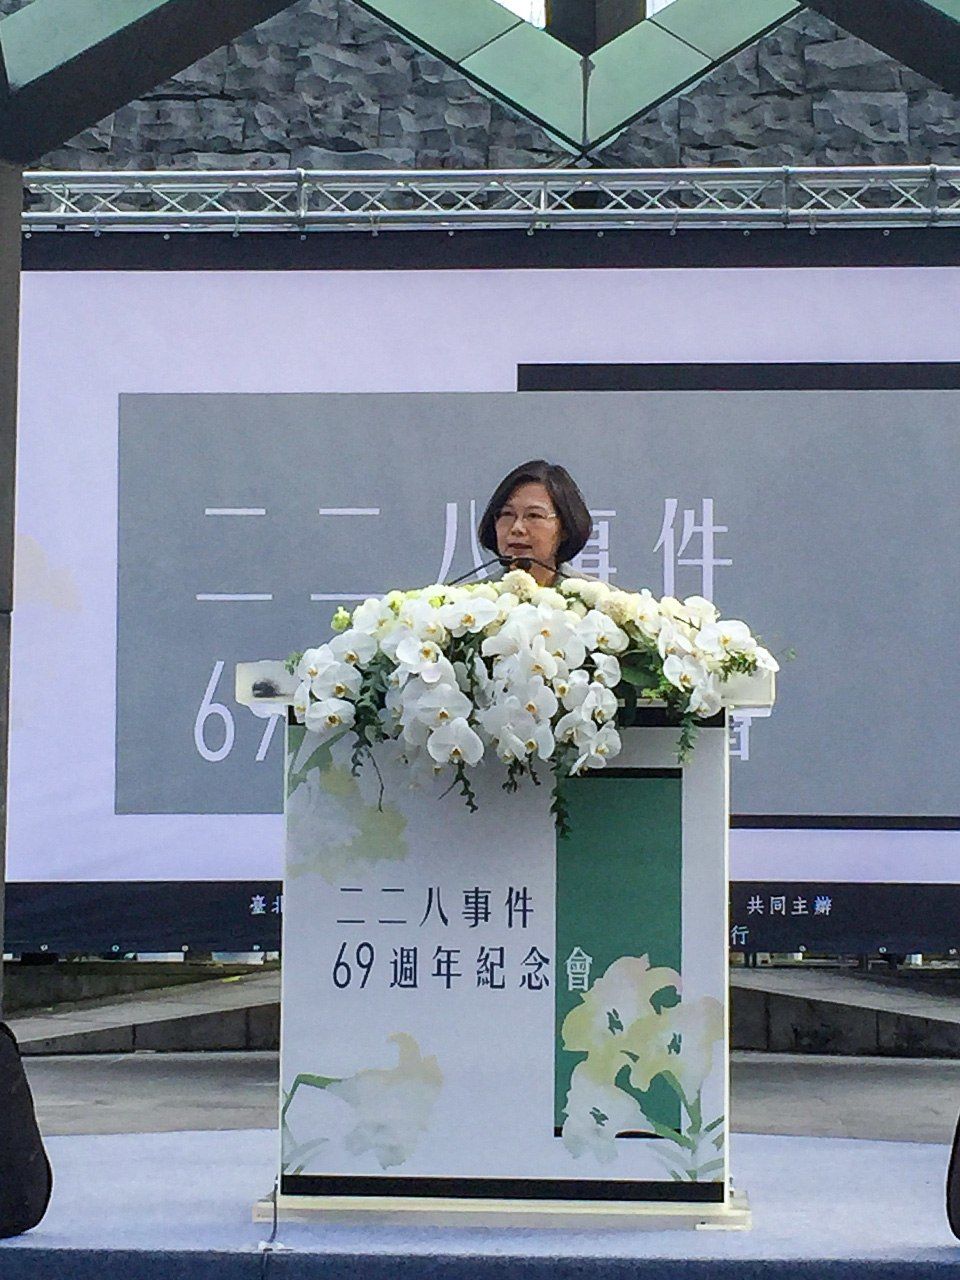 2016年の二二八追悼式典でスピーチする蔡英文総統